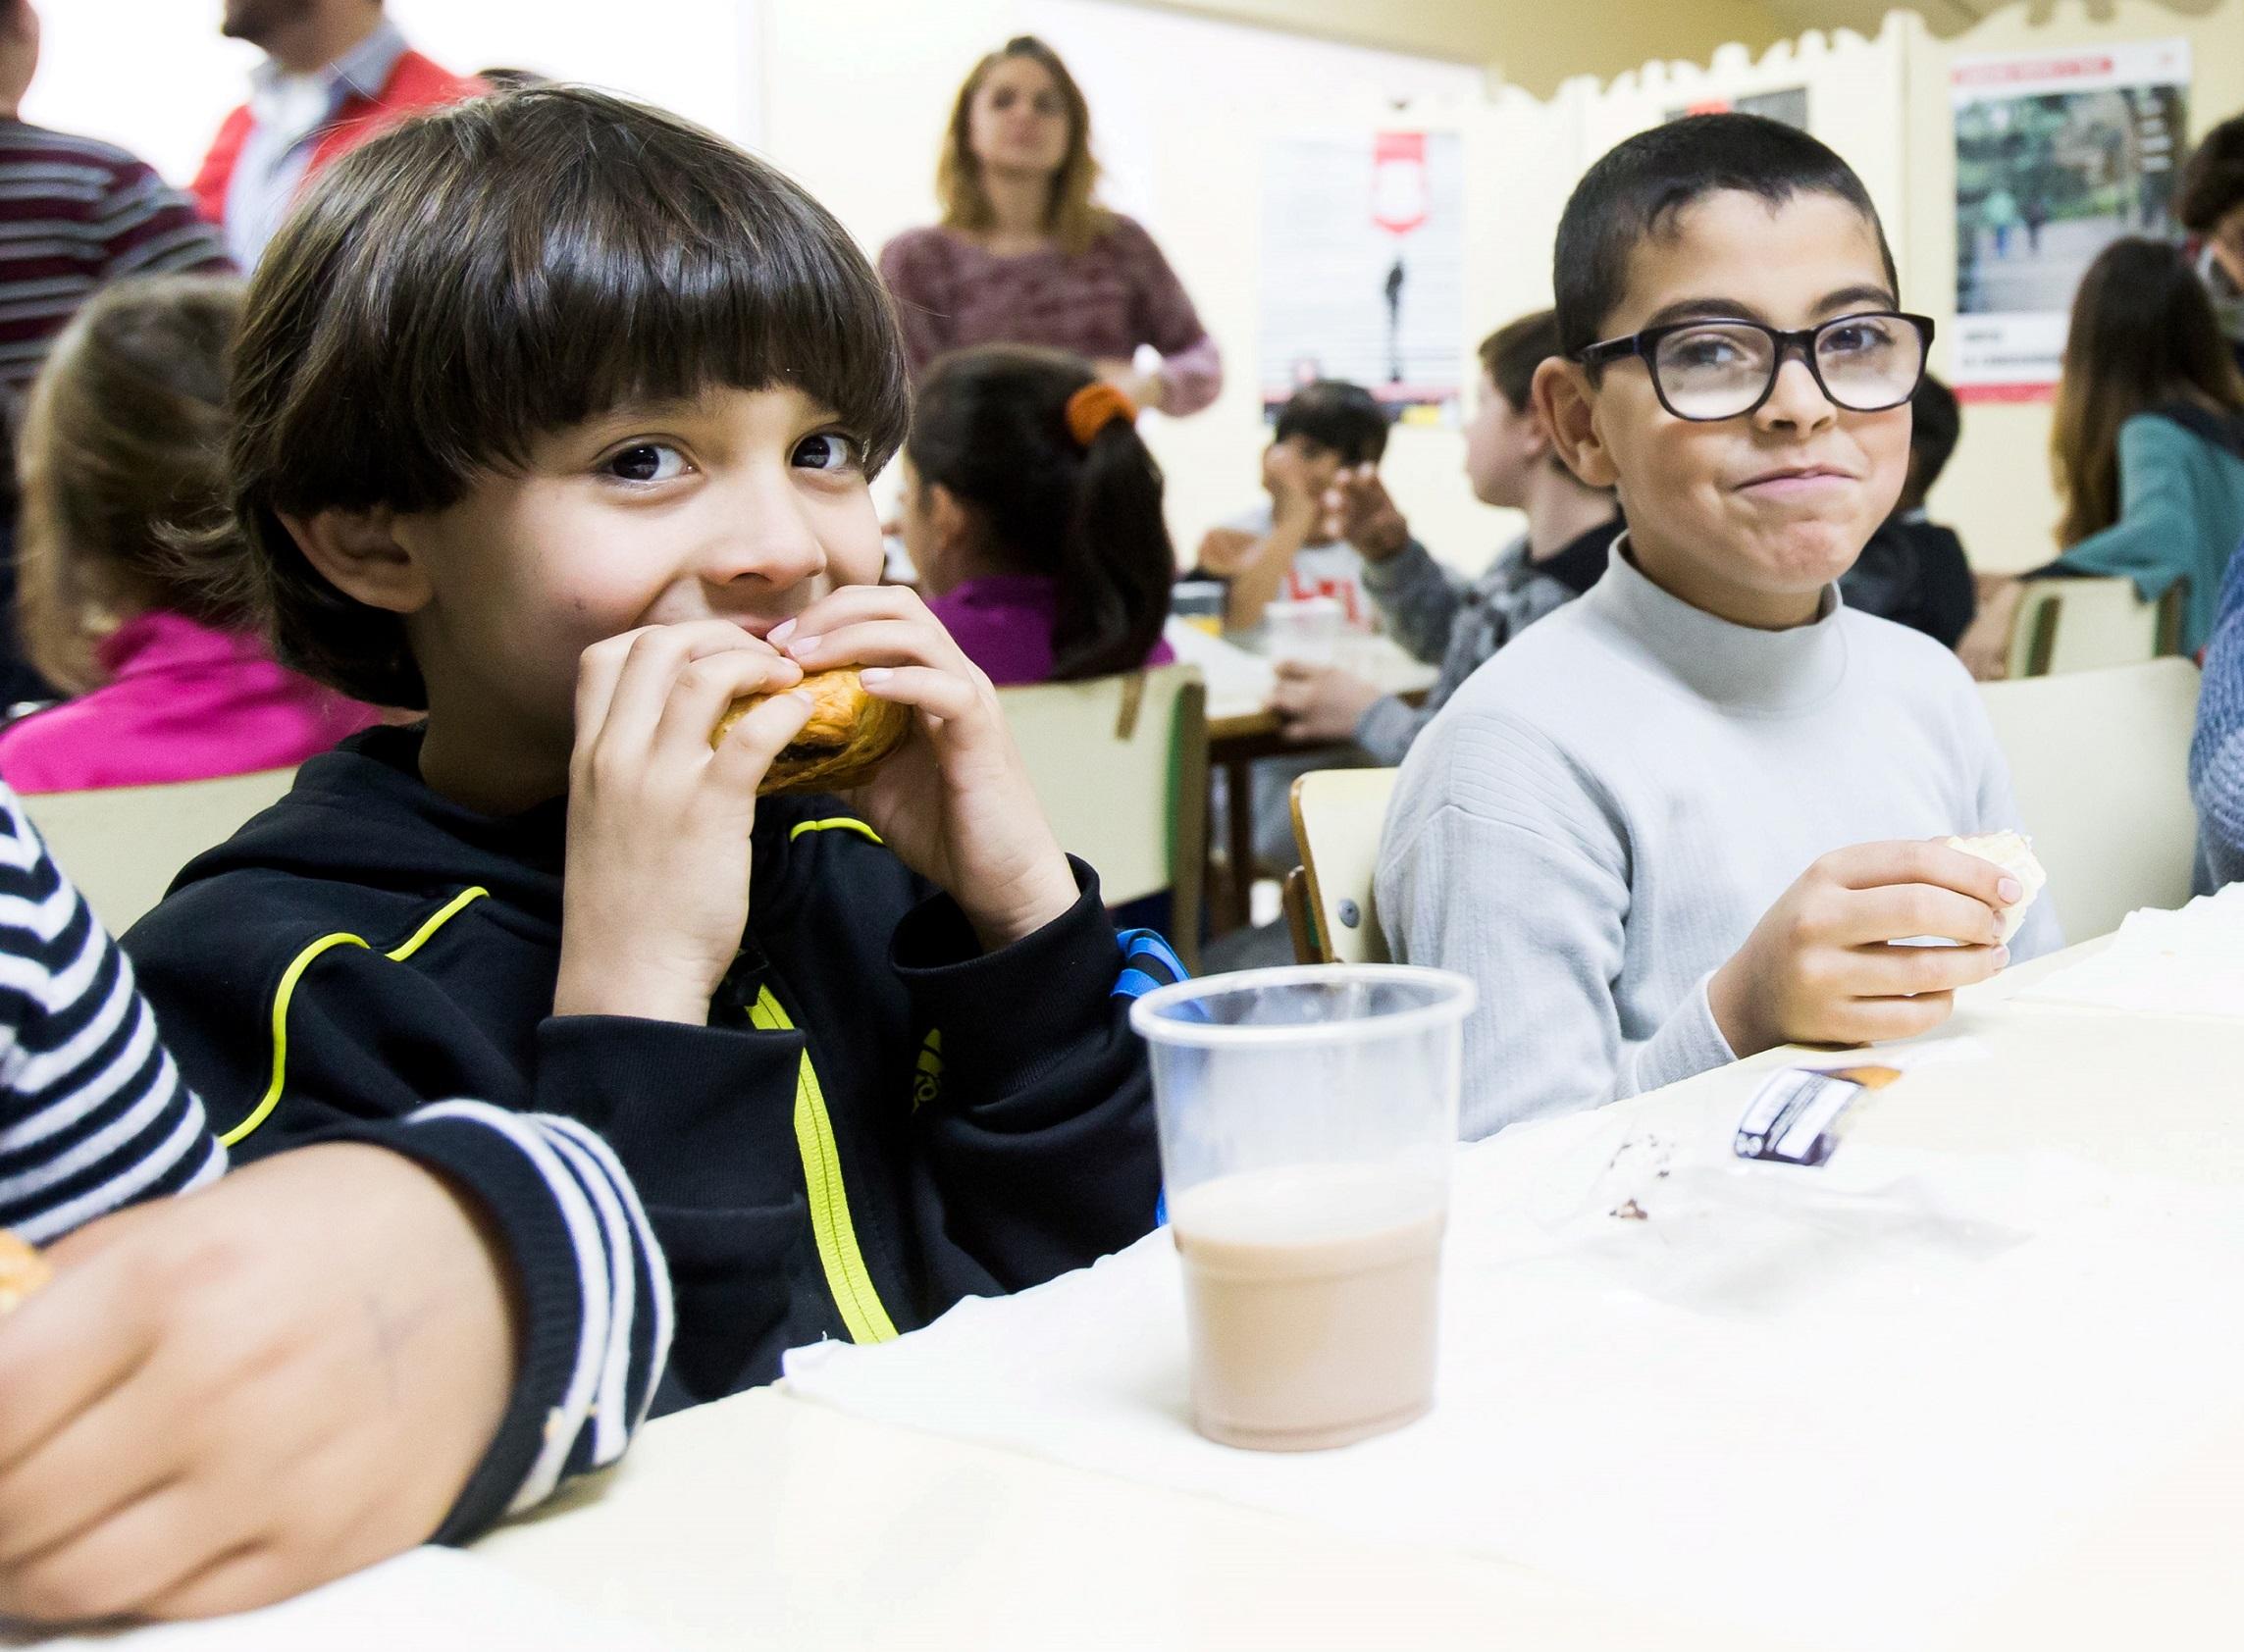 La campaña de recogida de leche Ningún Niño sin Bigote ha batido un récord de recaudación, con 2,5 millones de litros